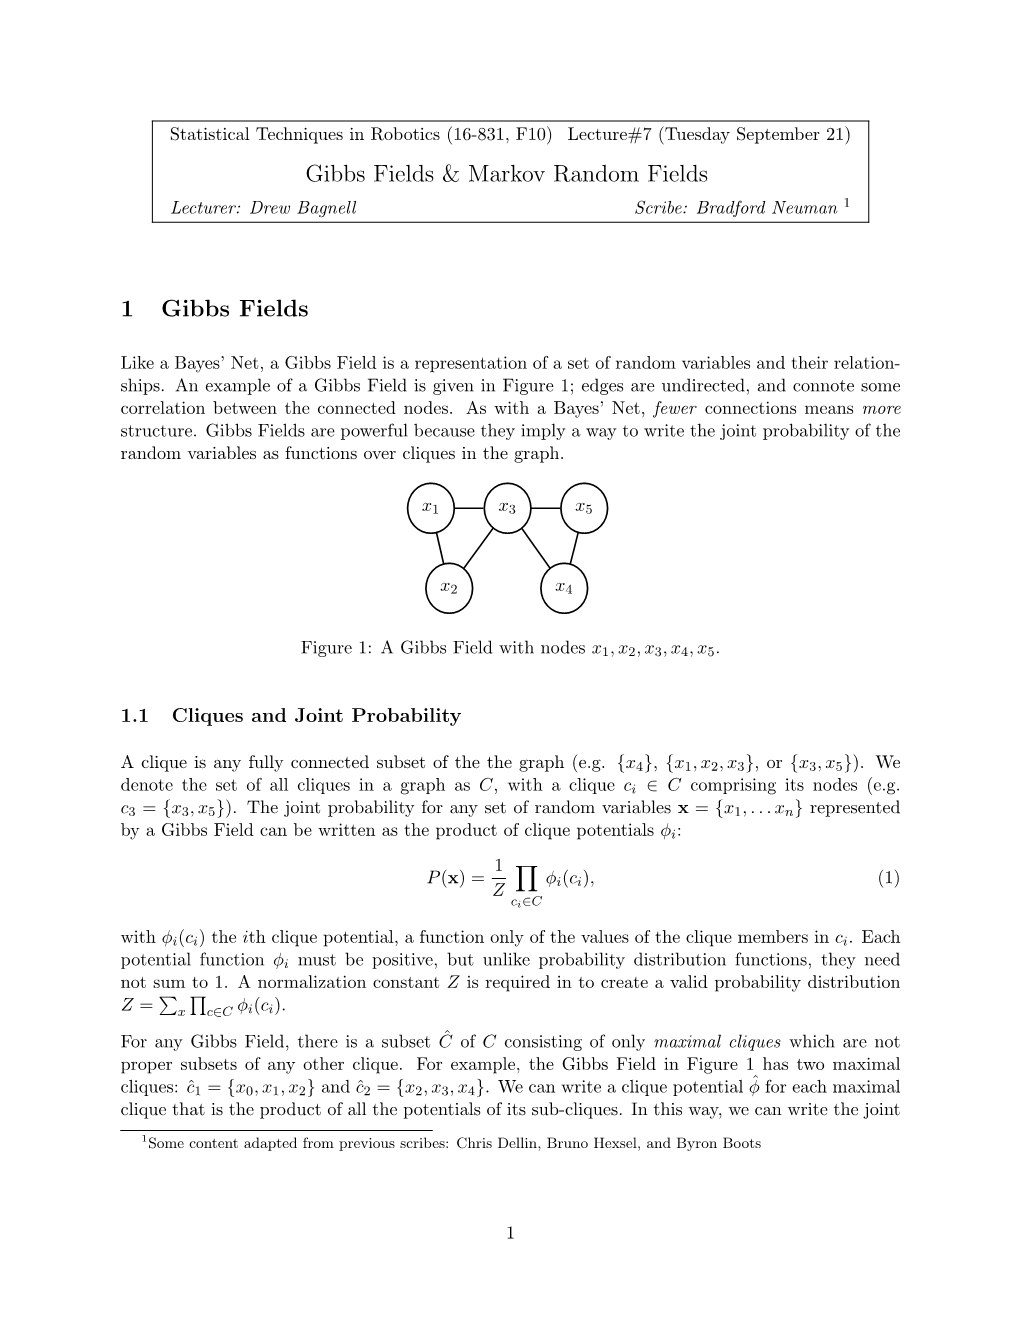 Gibbs Fields & Markov Random Fields 1 Gibbs Fields